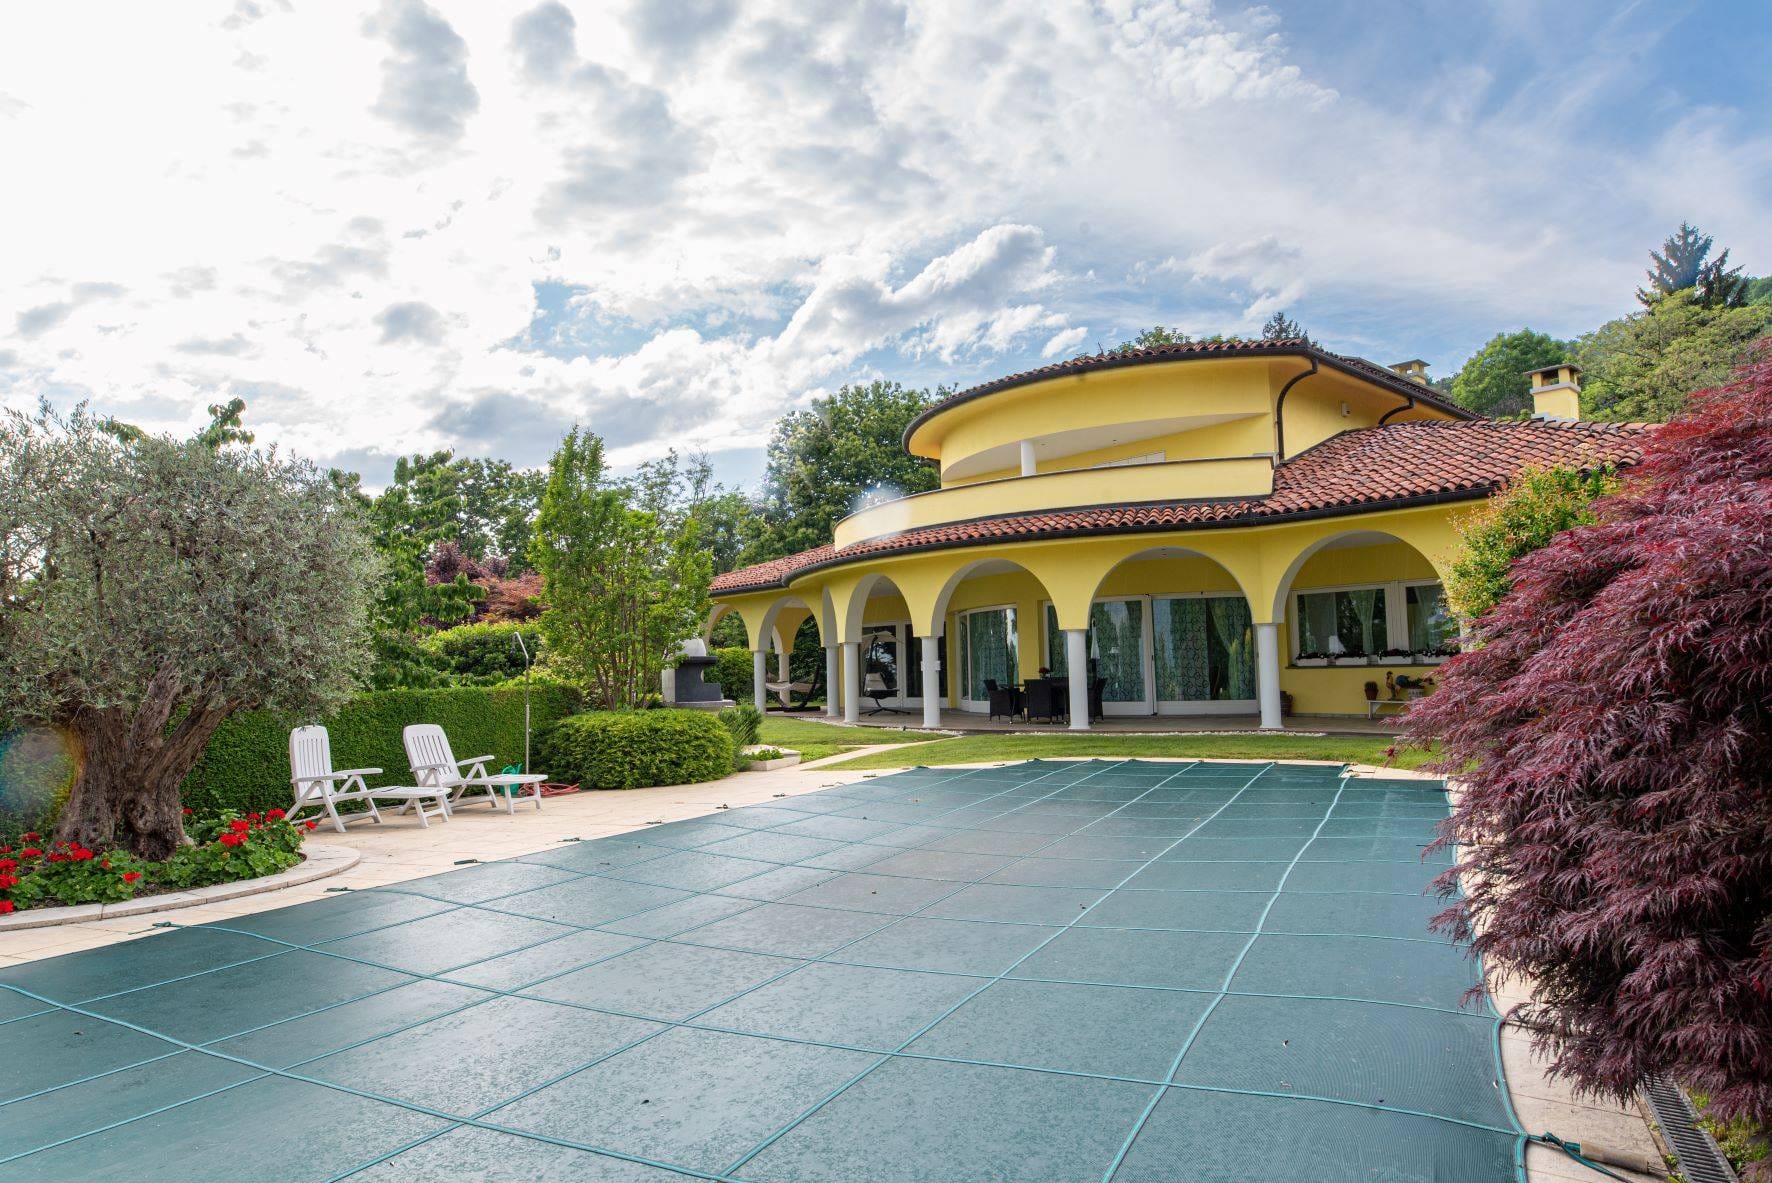 Villa unifamiliare con piscina - Via Piave, Ronco Biellese